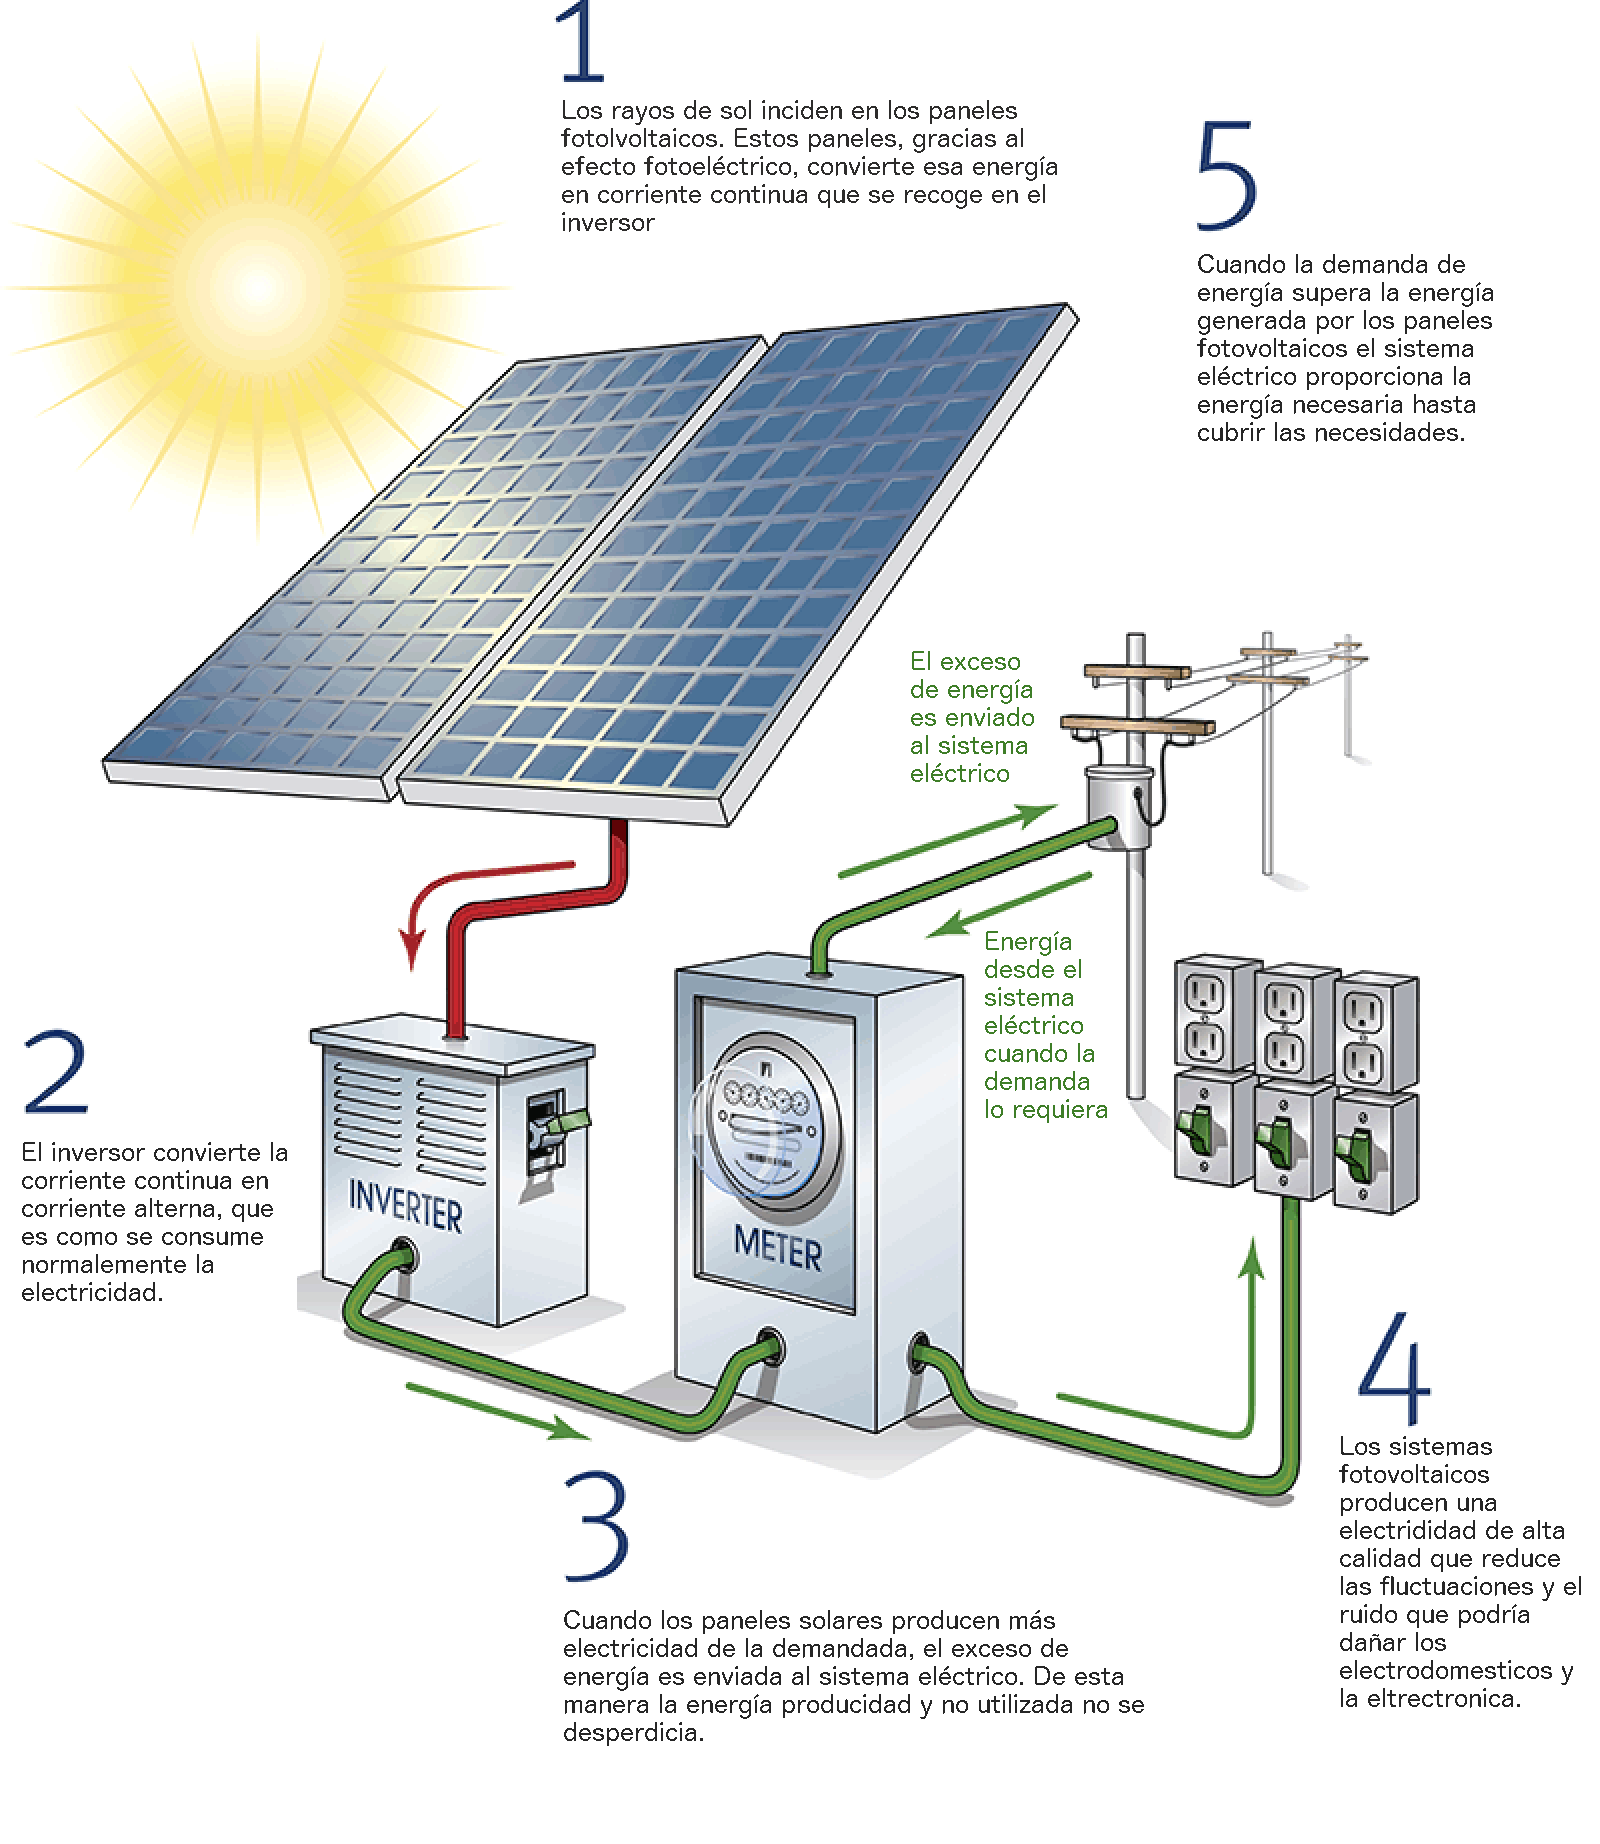 Placas solares para autoconsumo. ¿Puedo instalarlas yo mismo?